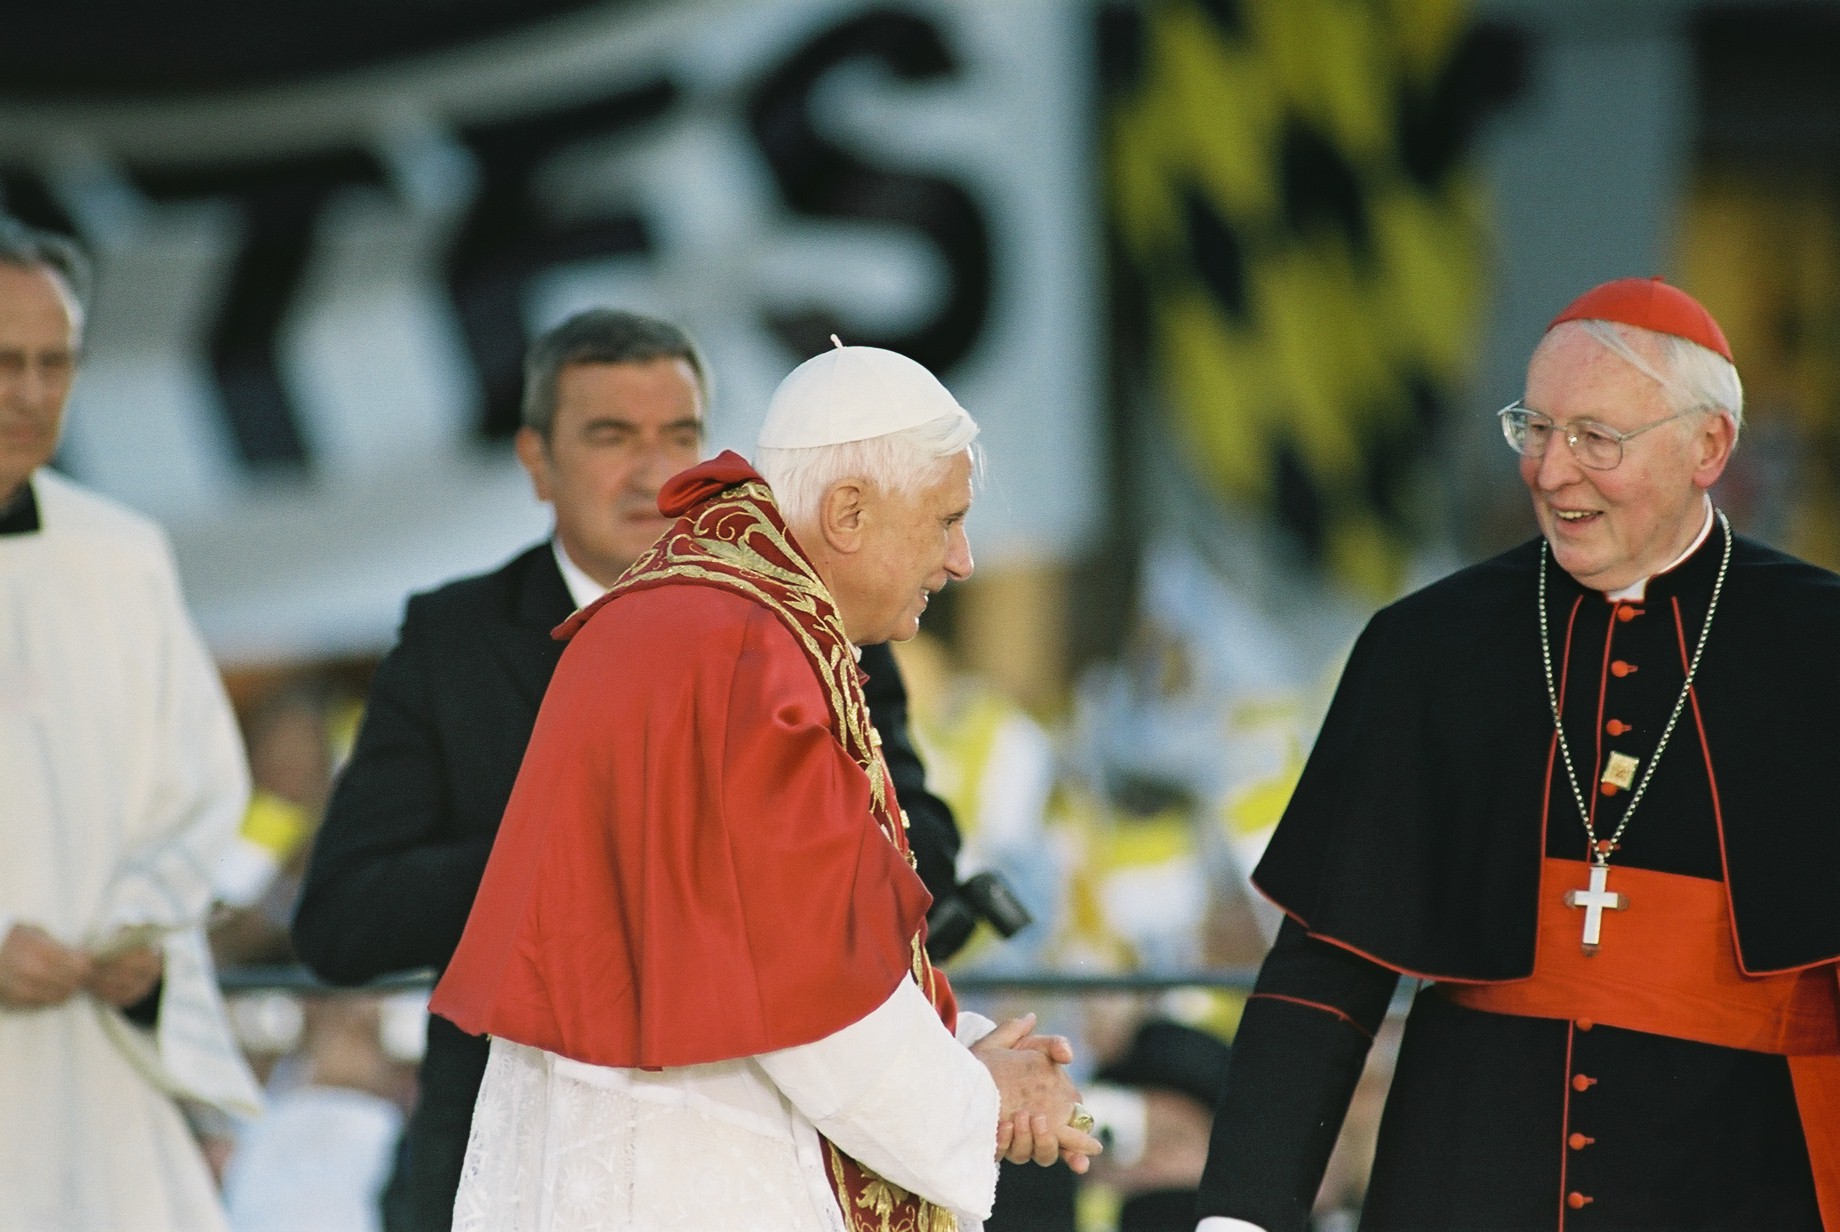 Papstbesuch in Bayern: Kardinal Wetter mit Benedikt XVI. am 9. September 2006 an der Münchner Mariensäule